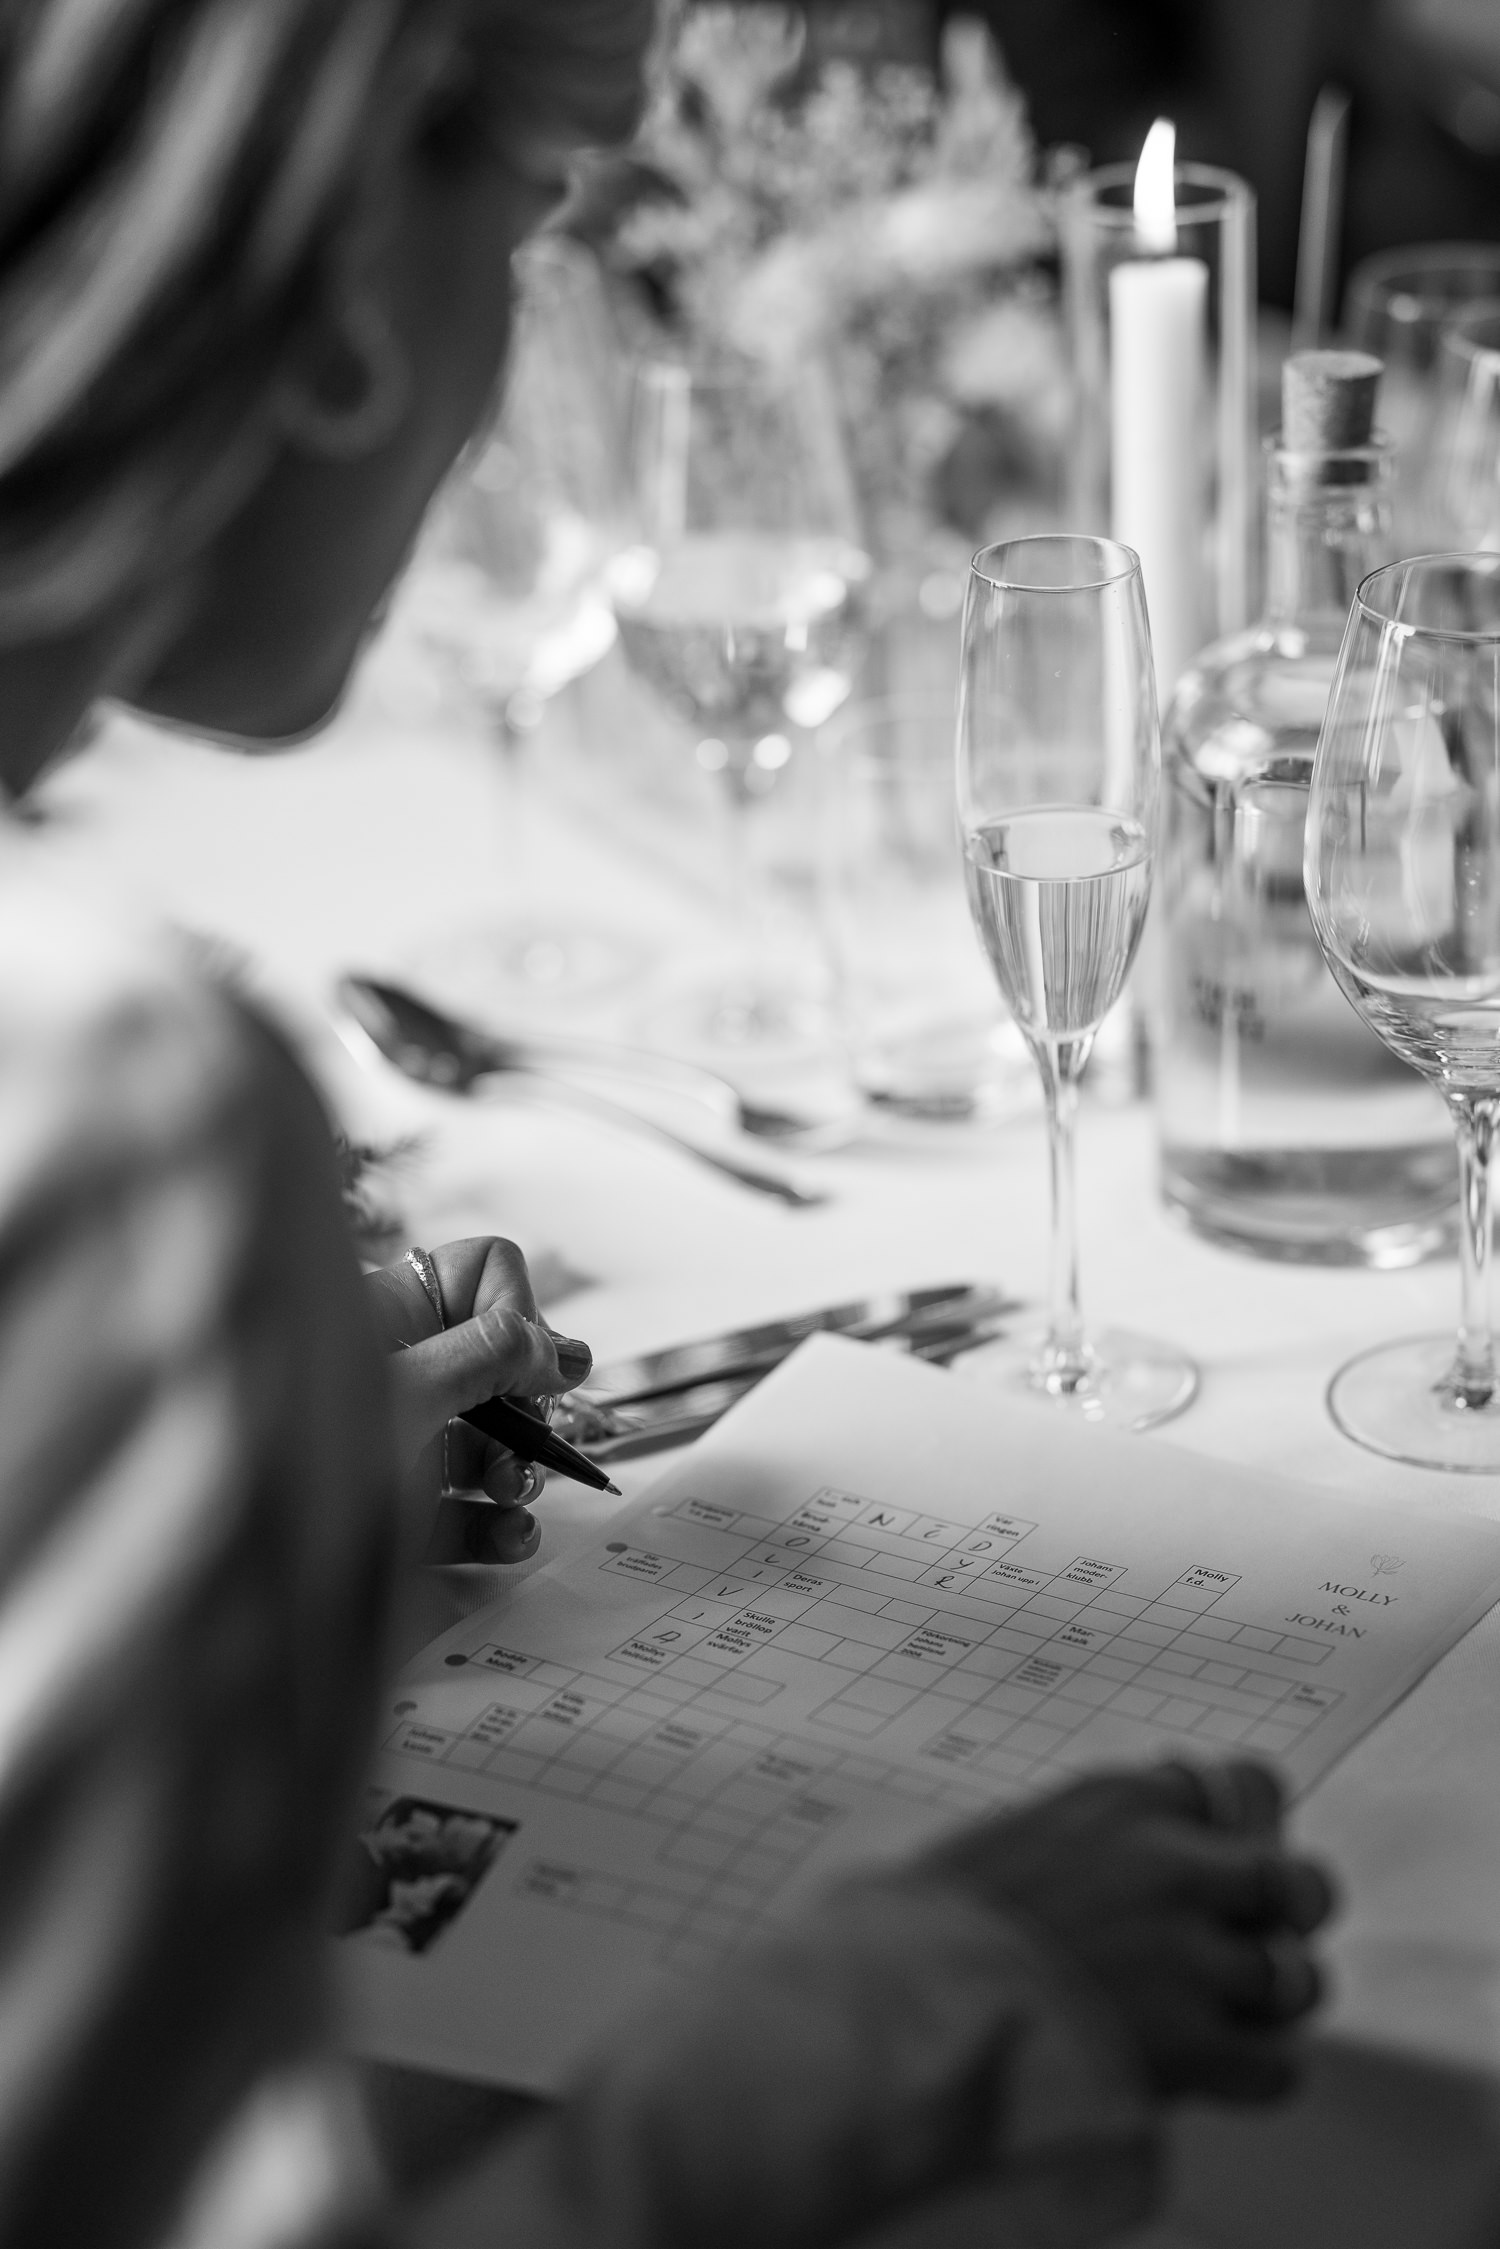 Börja bröllopsmiddagen med att era gäster skall lösa ett korsord om brudparet tillsammans med bordsgrannen. Bröllopsfotograf: Tove Lundquist. 